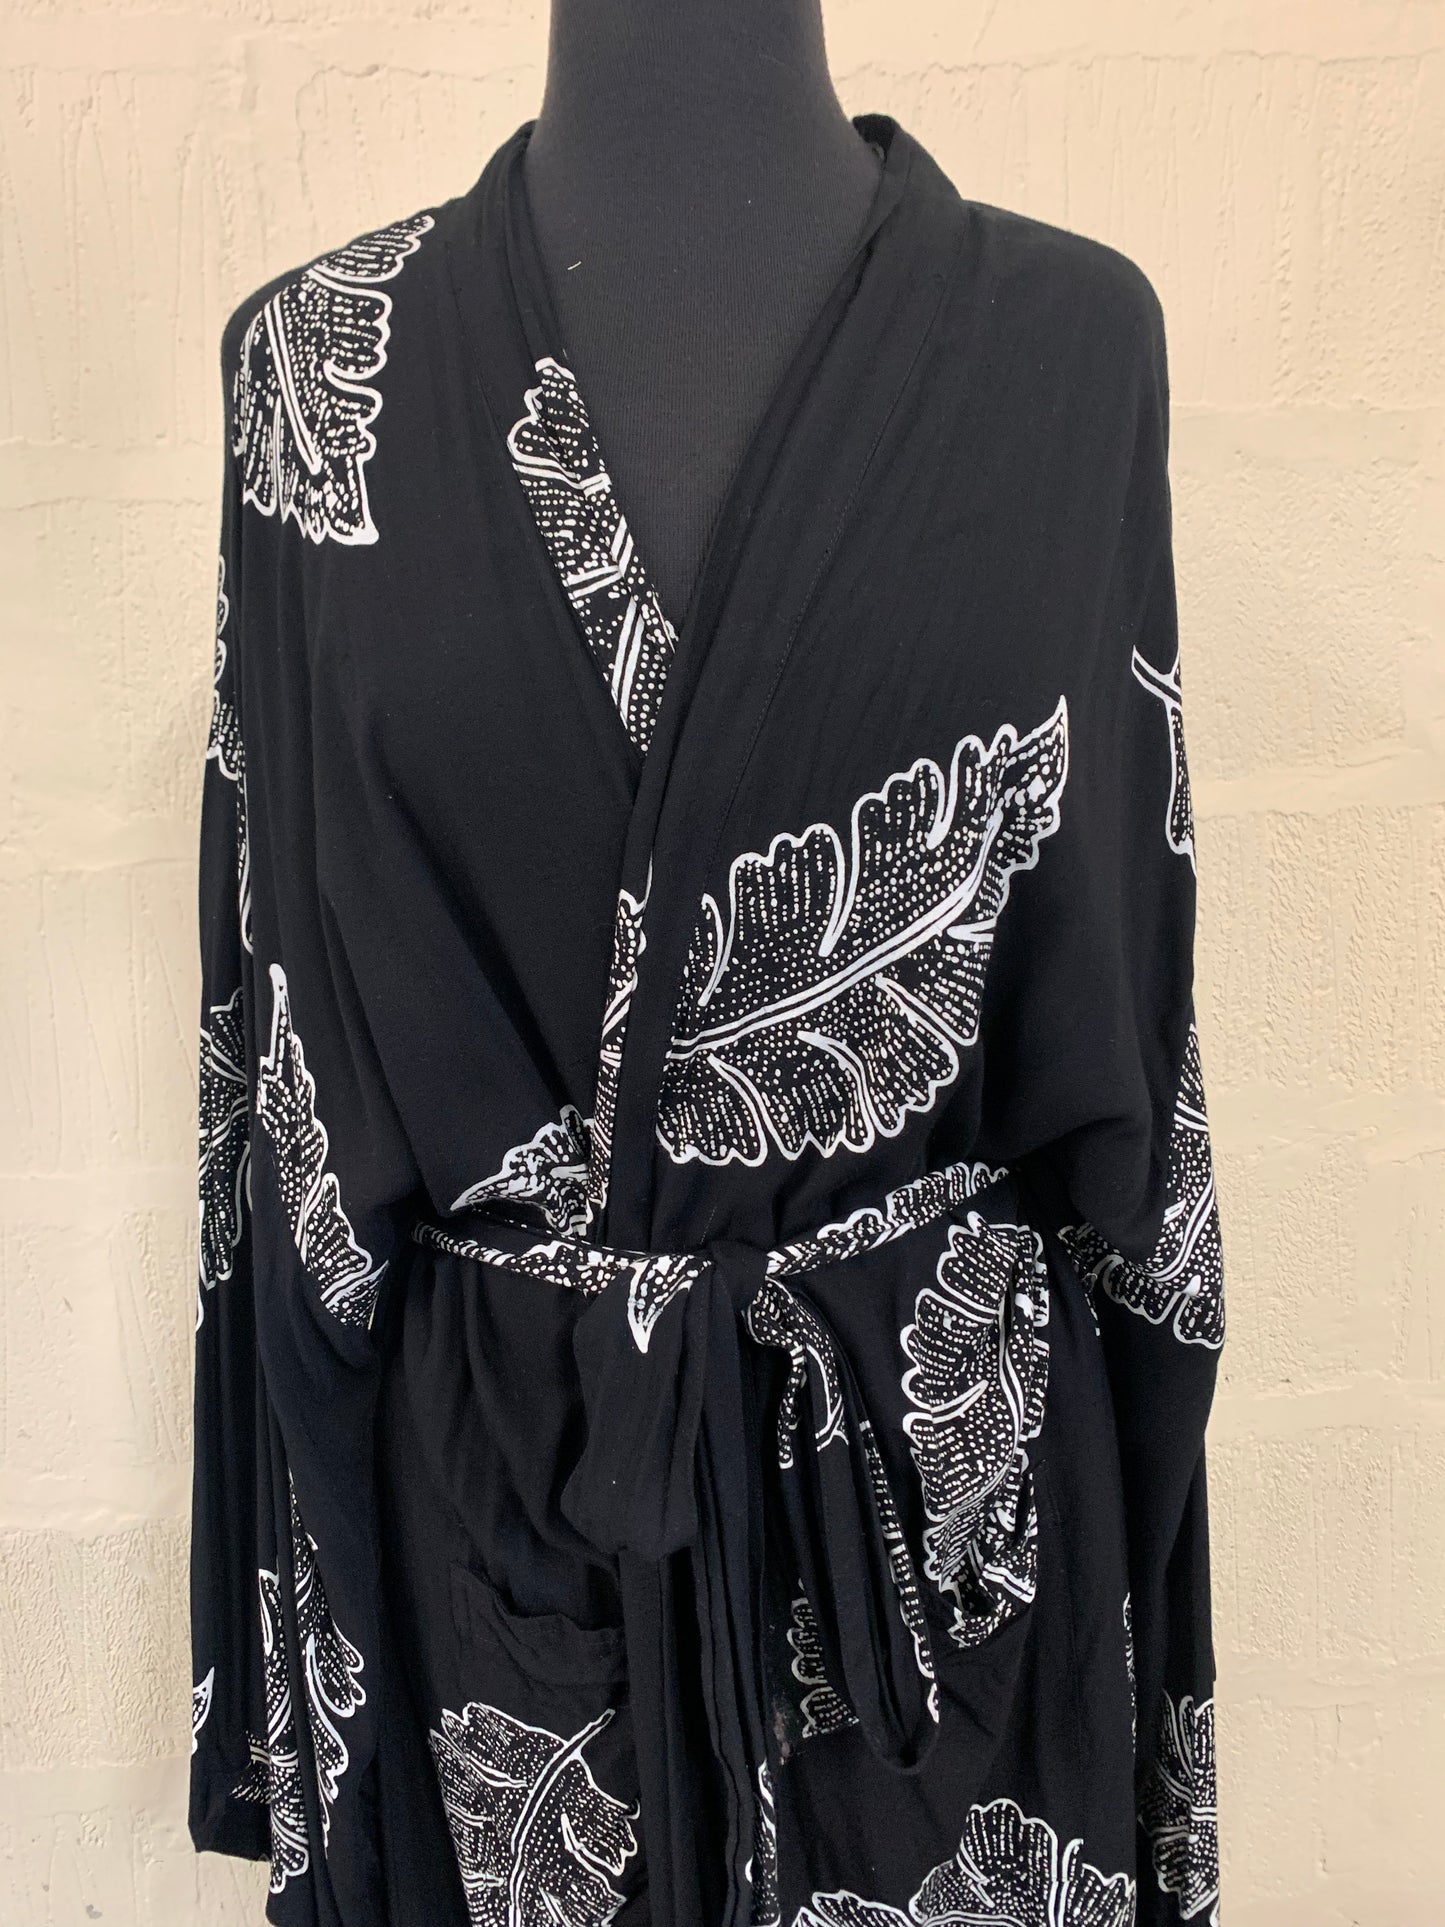 Vintage Black and White Floral Kimono Robe Size 18-22